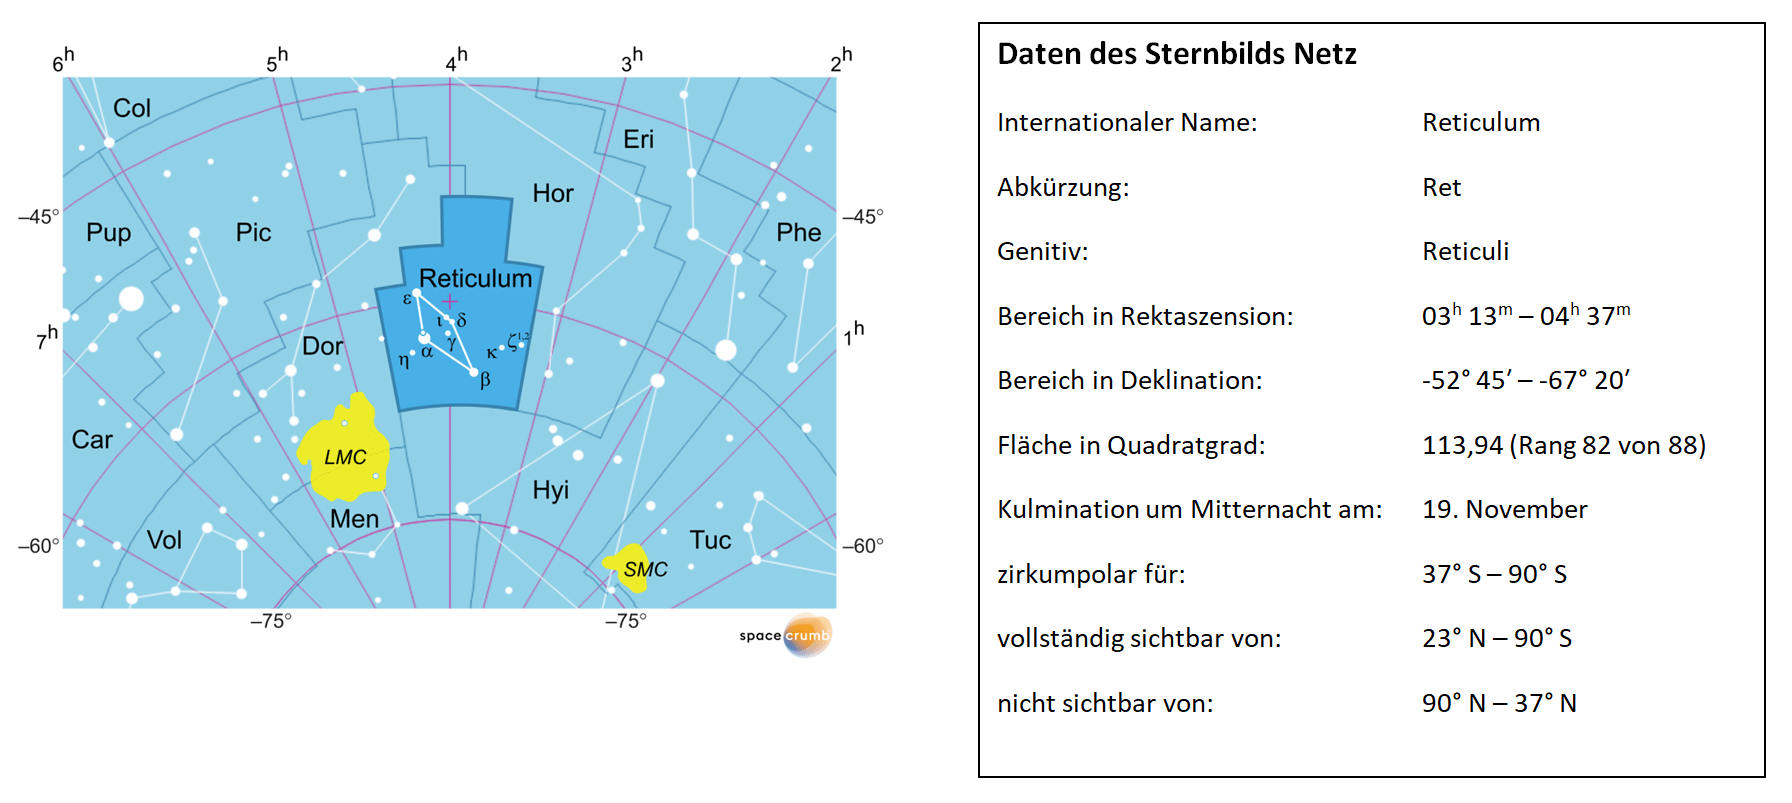 Links zeigt eine mit Koordinaten versehene Karte eines Himmelsausschnitts weiße Sterne auf hellblauem Hintergrund. Die Fläche, die das Sternbild Netz einnimmt, ist dunkelblau hervorgehoben. Eine Tabelle rechts gibt wichtige Daten des Sternbilds Netz an.